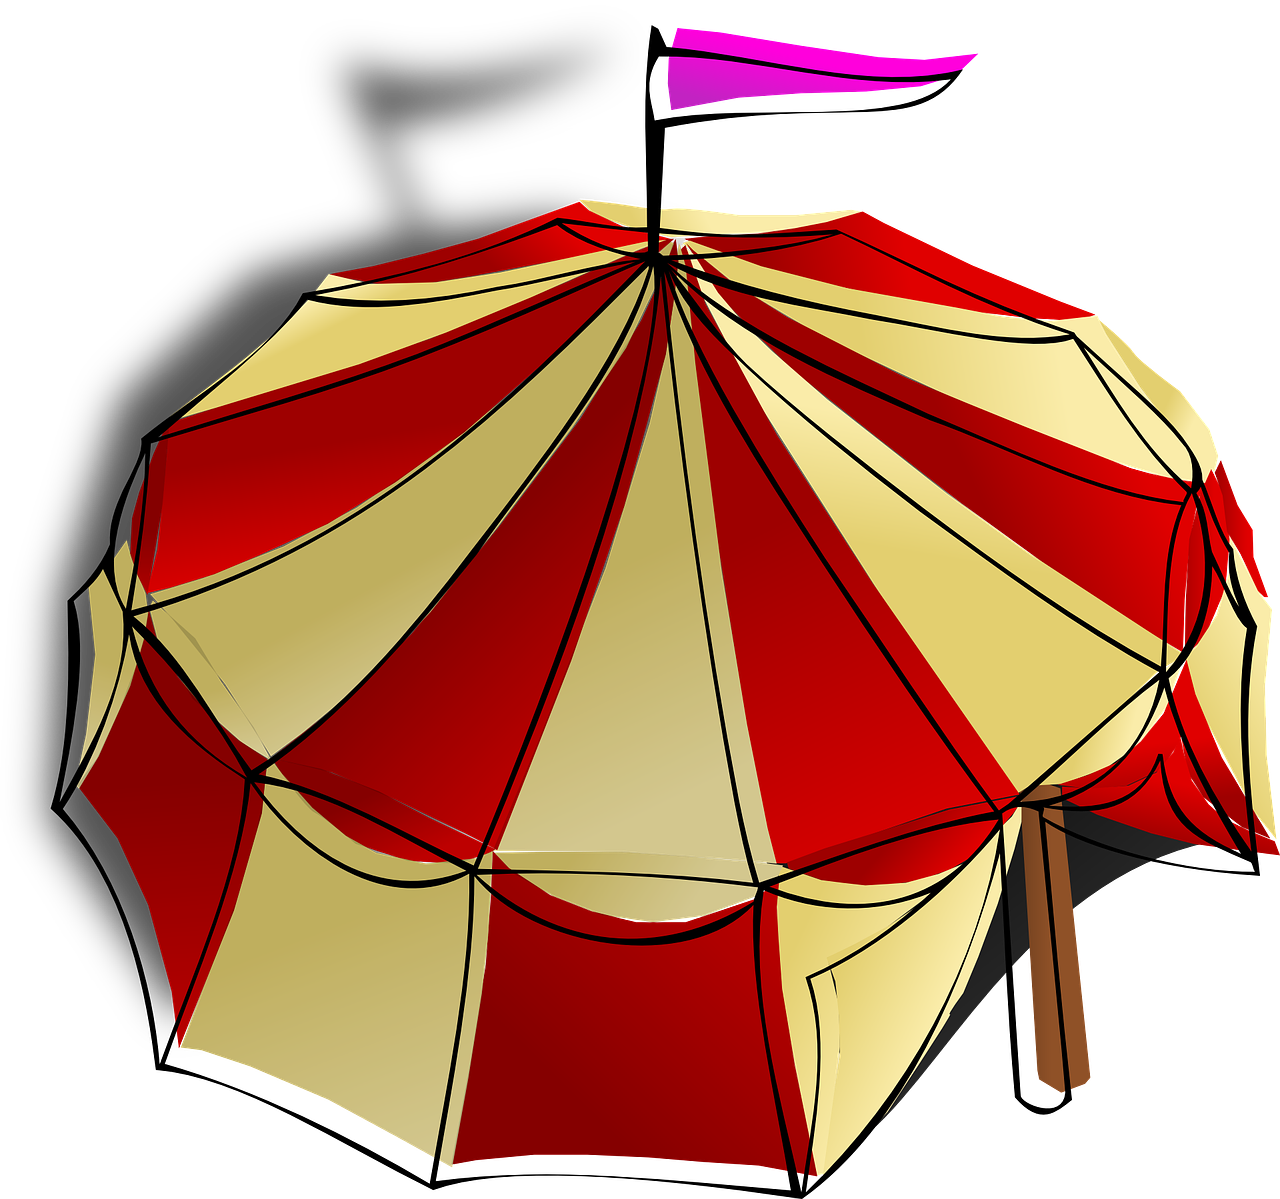 Circus Tent Umbrella Illustration PNG